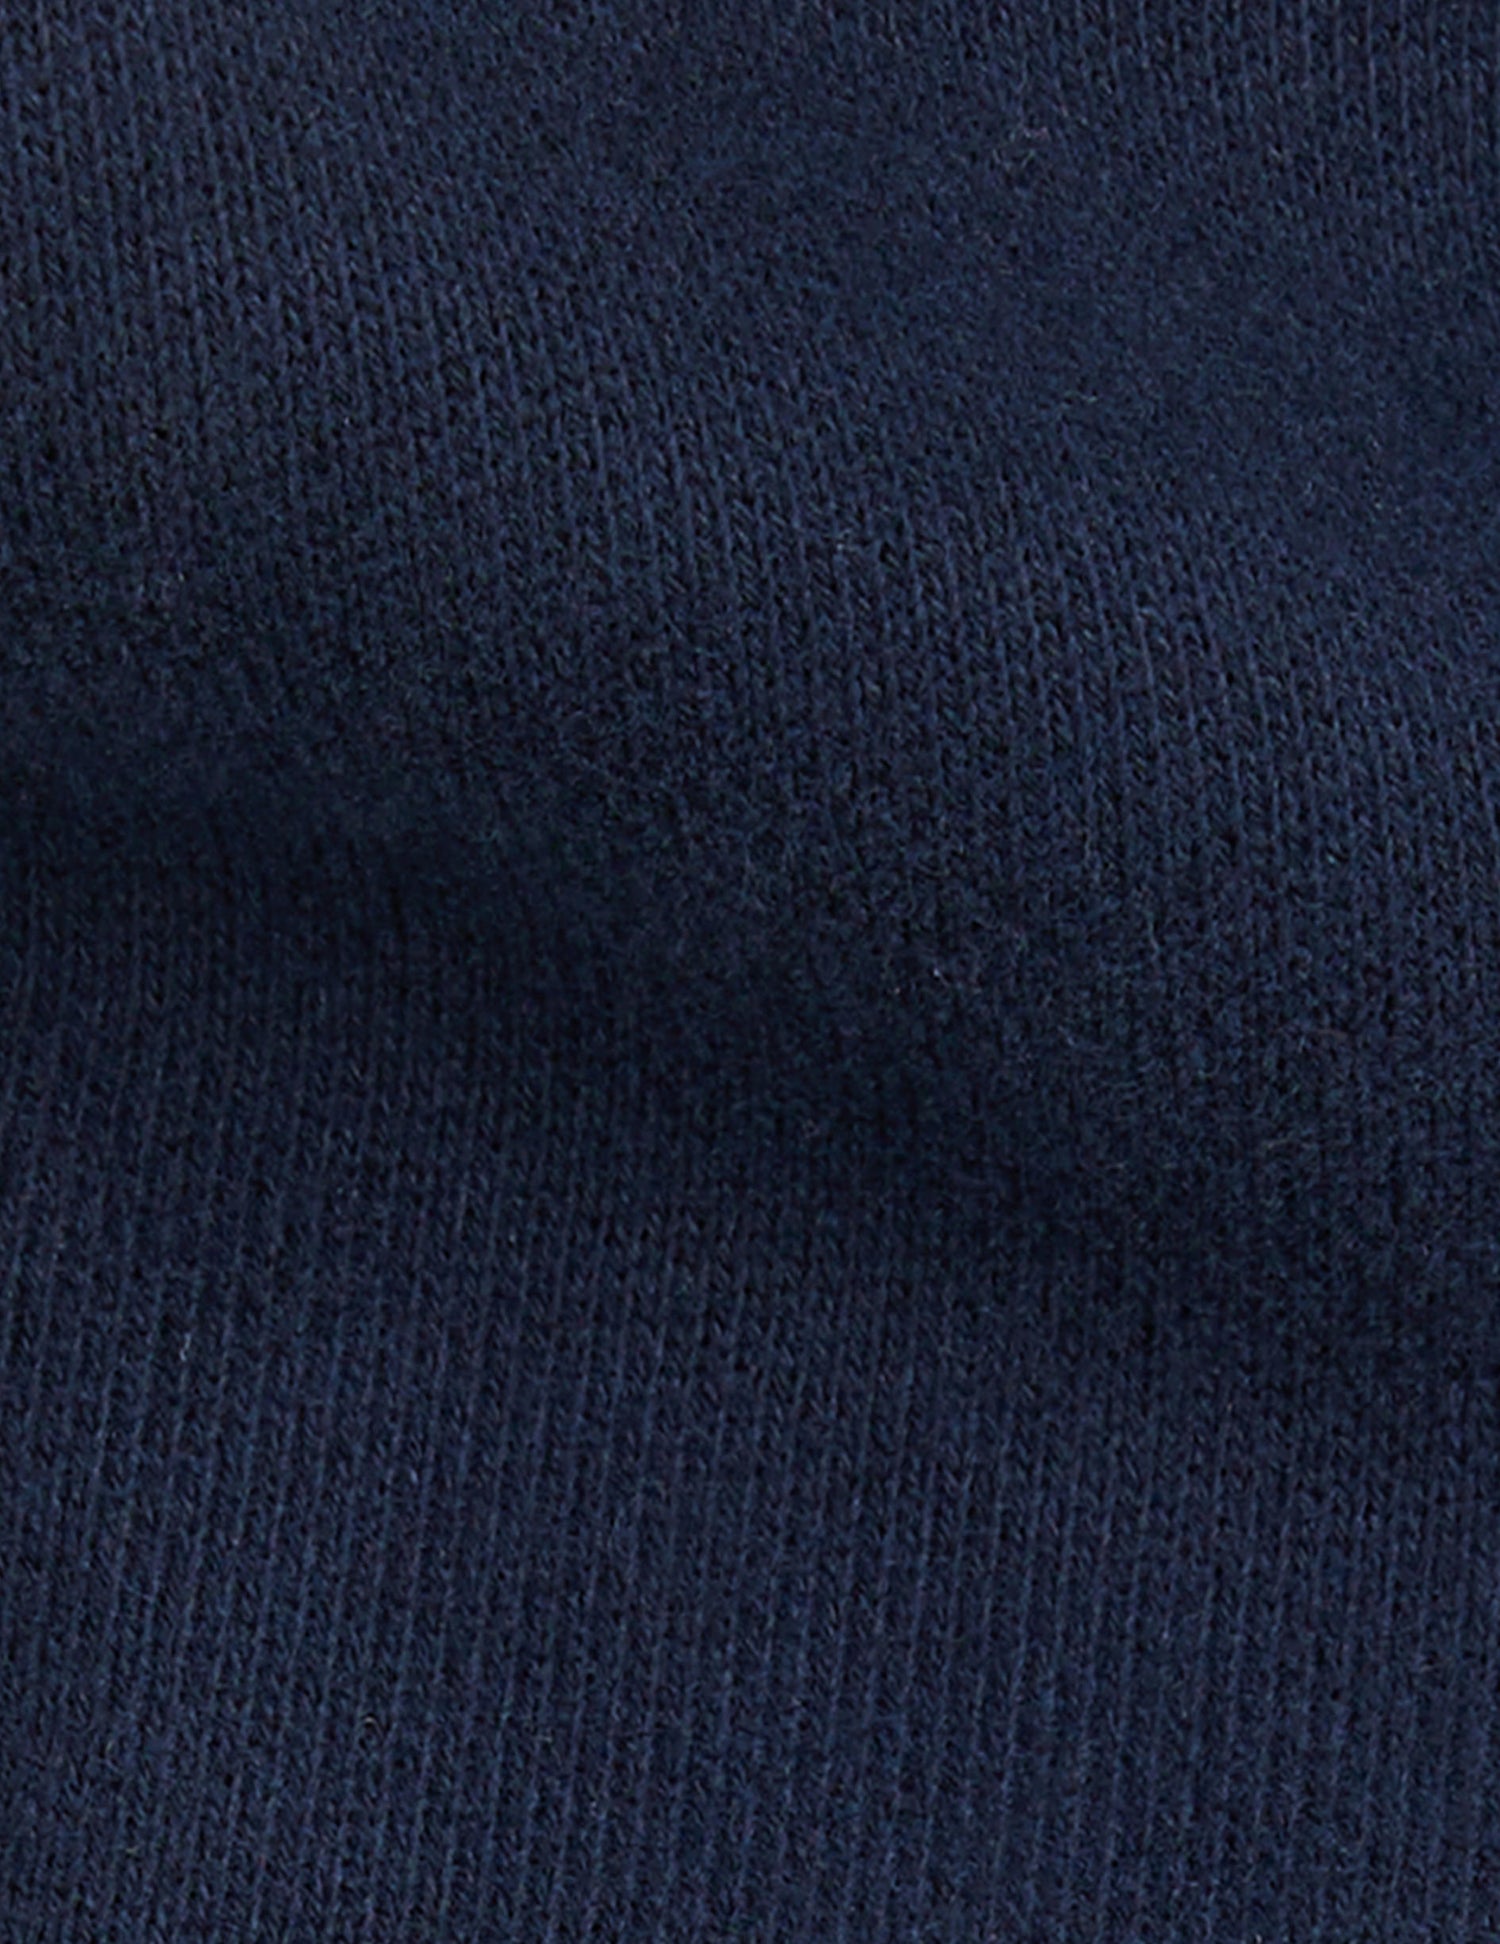 Ivanhoe sweatshirt in navy blue fleece